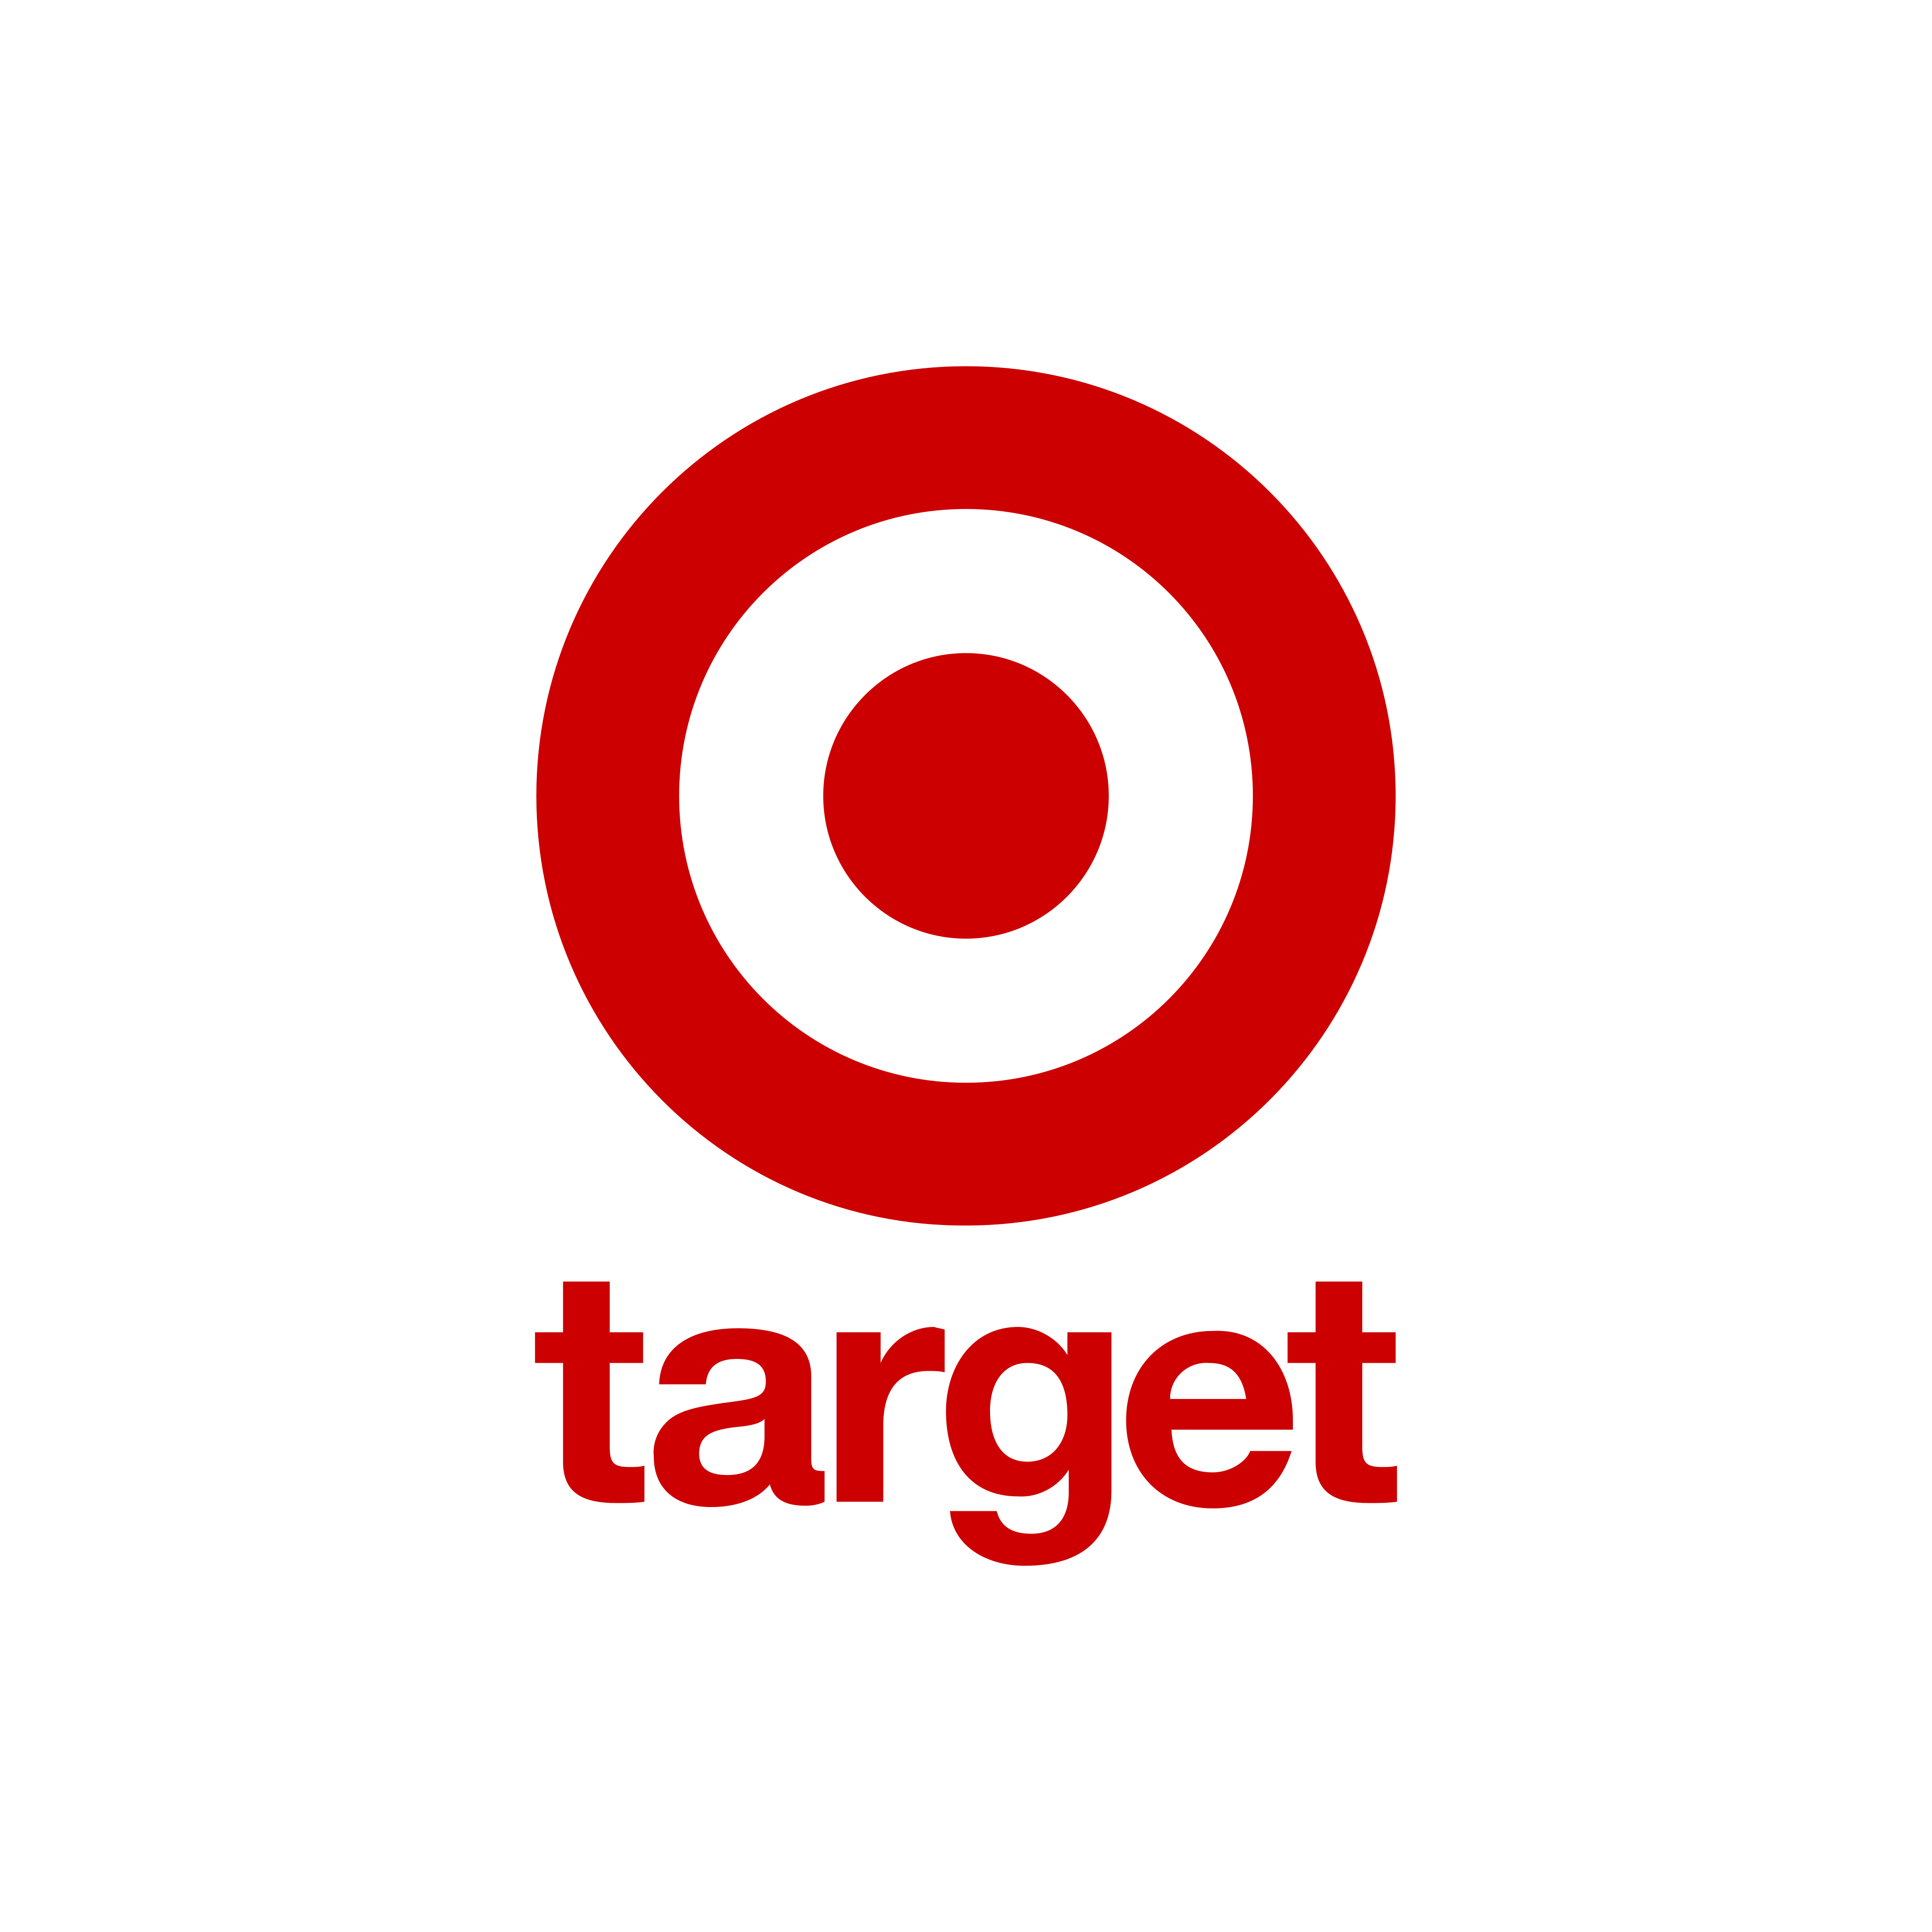 Target Logos PNG Pic